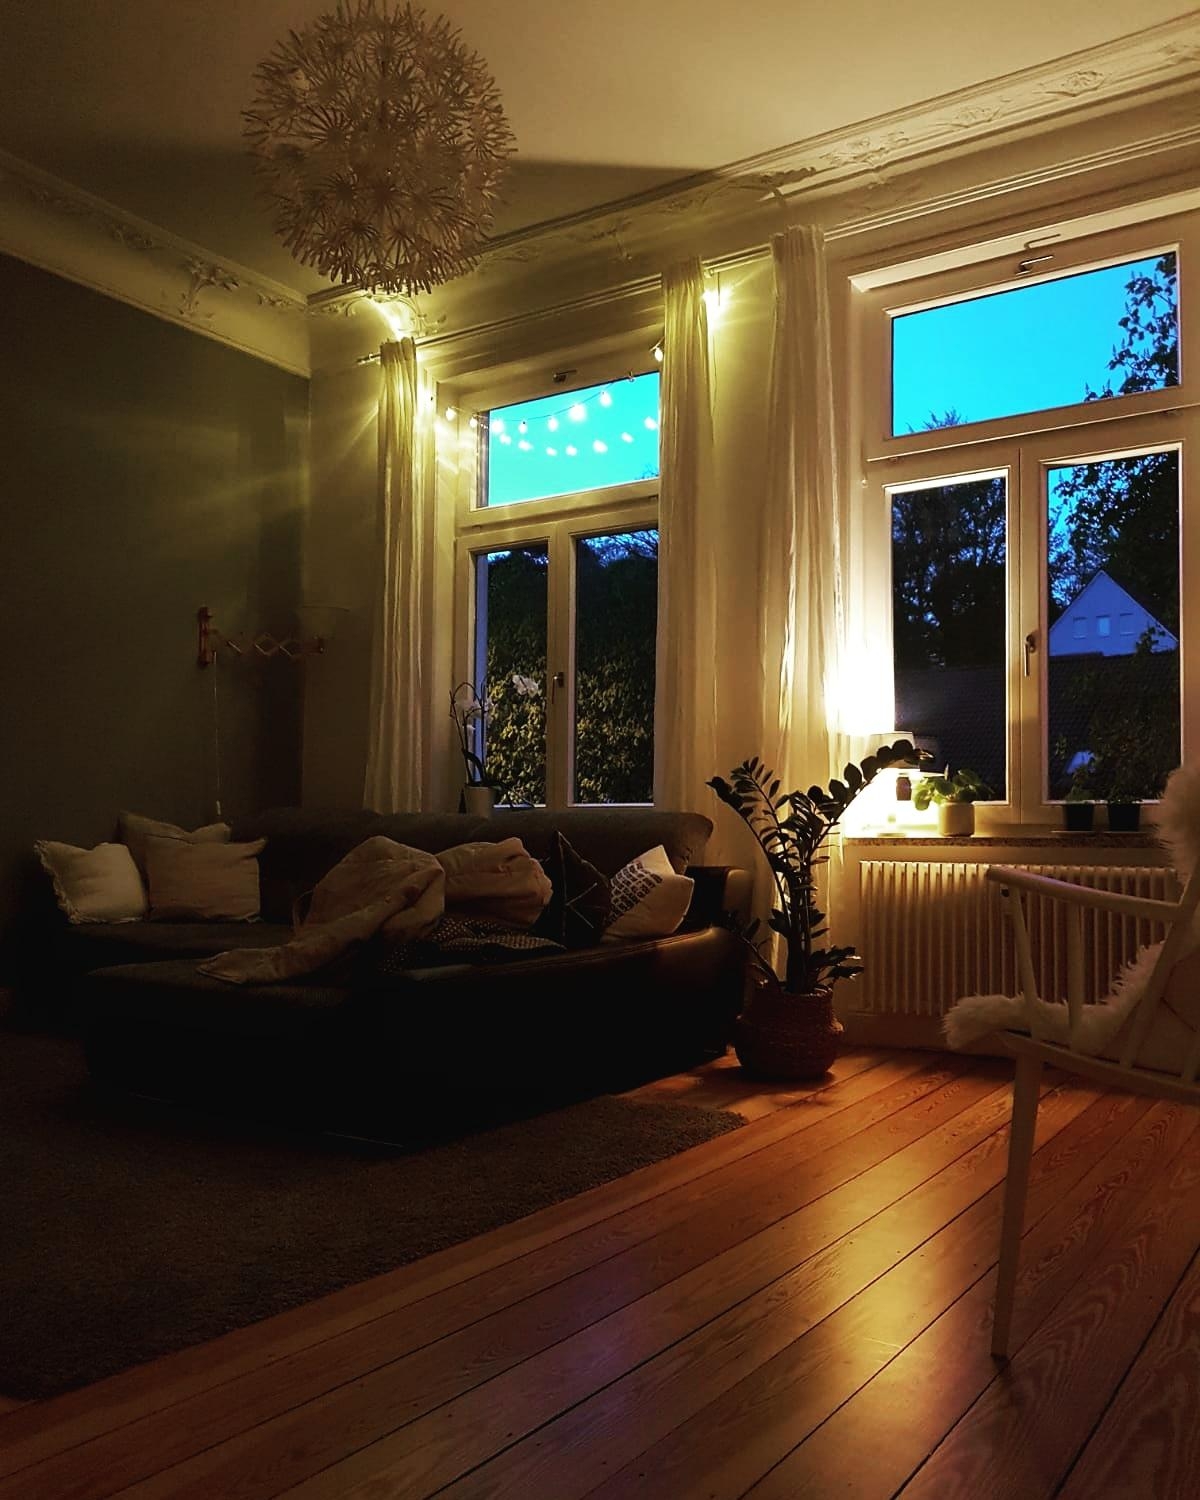 Abendlicht 🌟 #Abendlicht #gemütlich #cozy #Wohnzimmer #Altbau #Altbauliebe #couch 